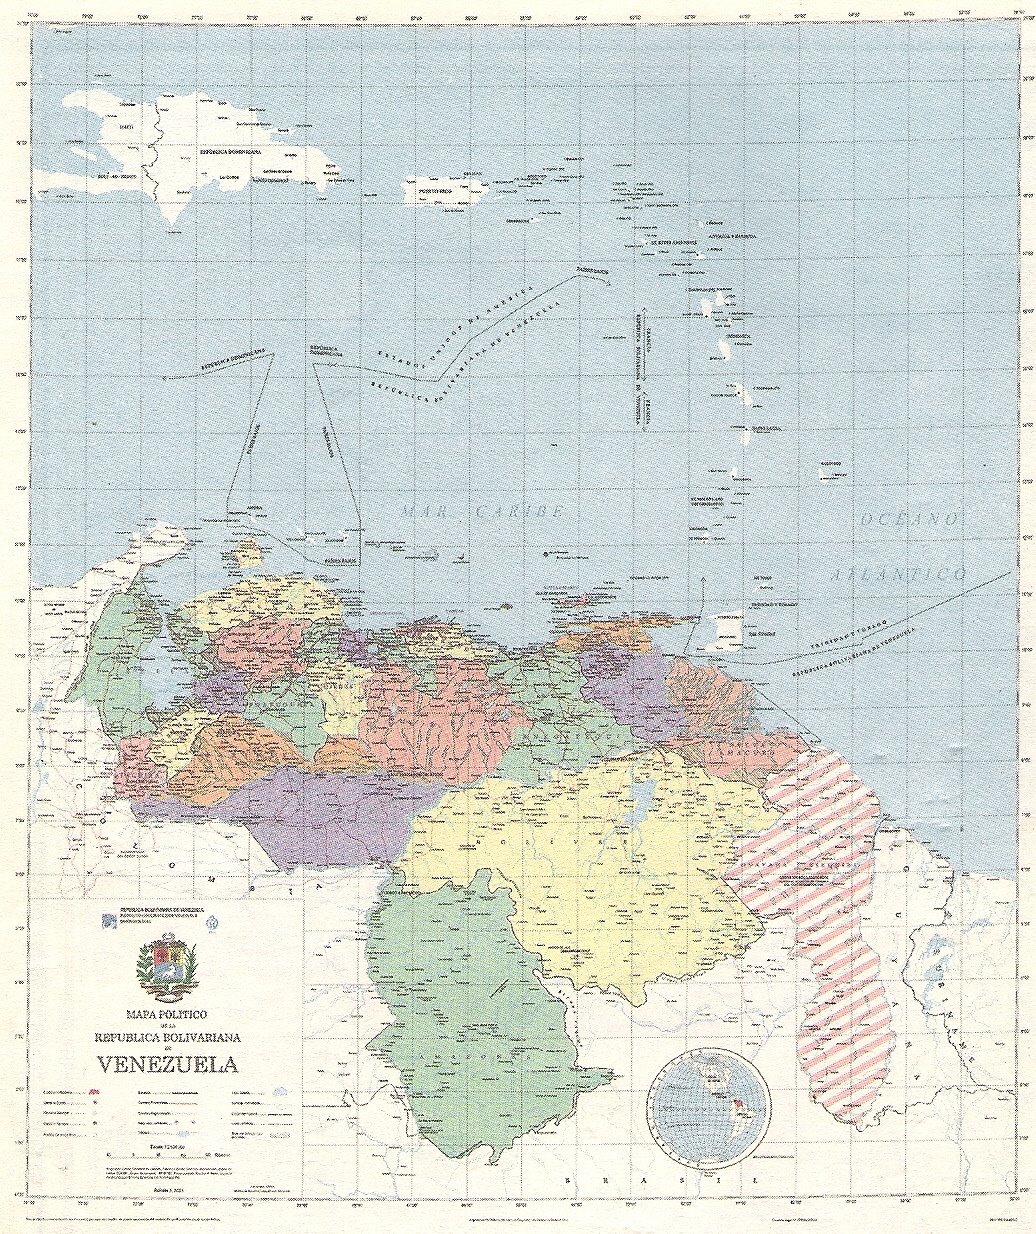 [Mapa+Politico+de+la+Republica+Bolivariana+de+Venezuela+MARNR-IGVSB+2001+87,5X101,7Ccm.jpg]